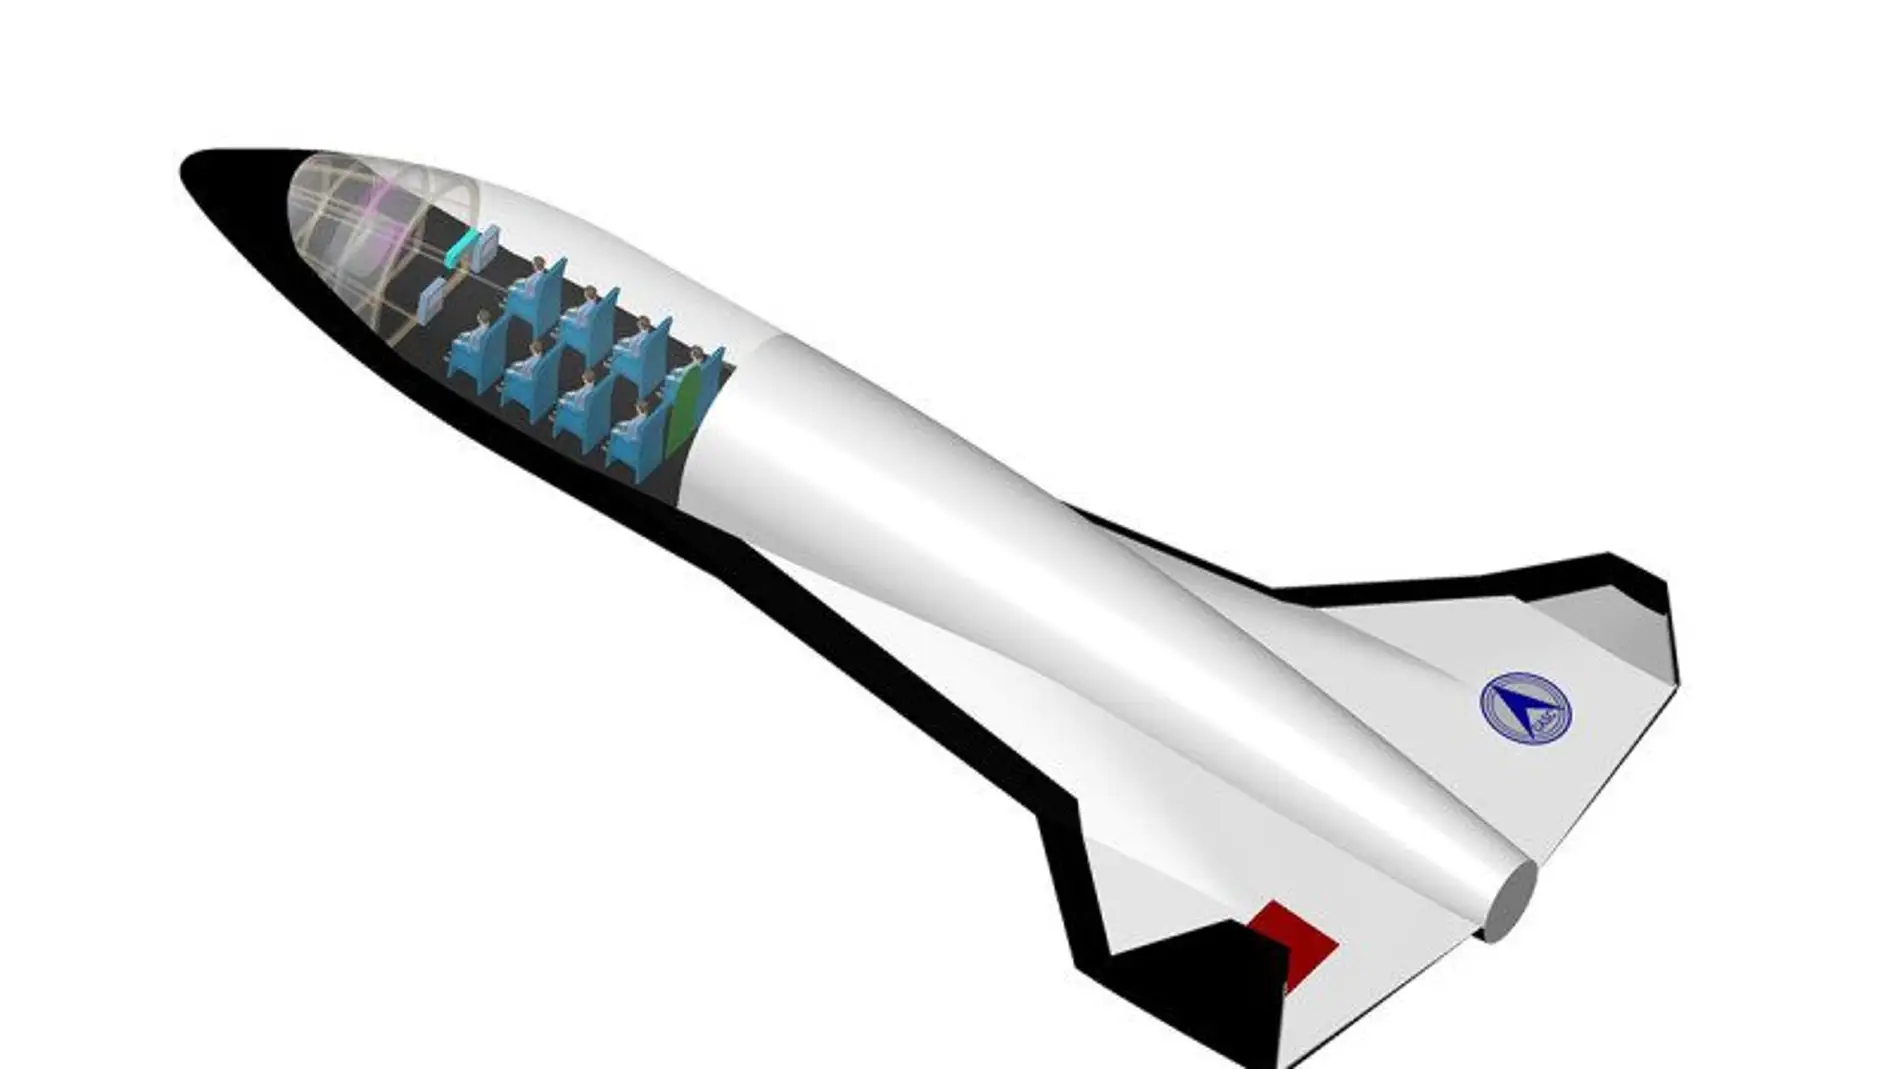 Prototipo del vehículo espacial